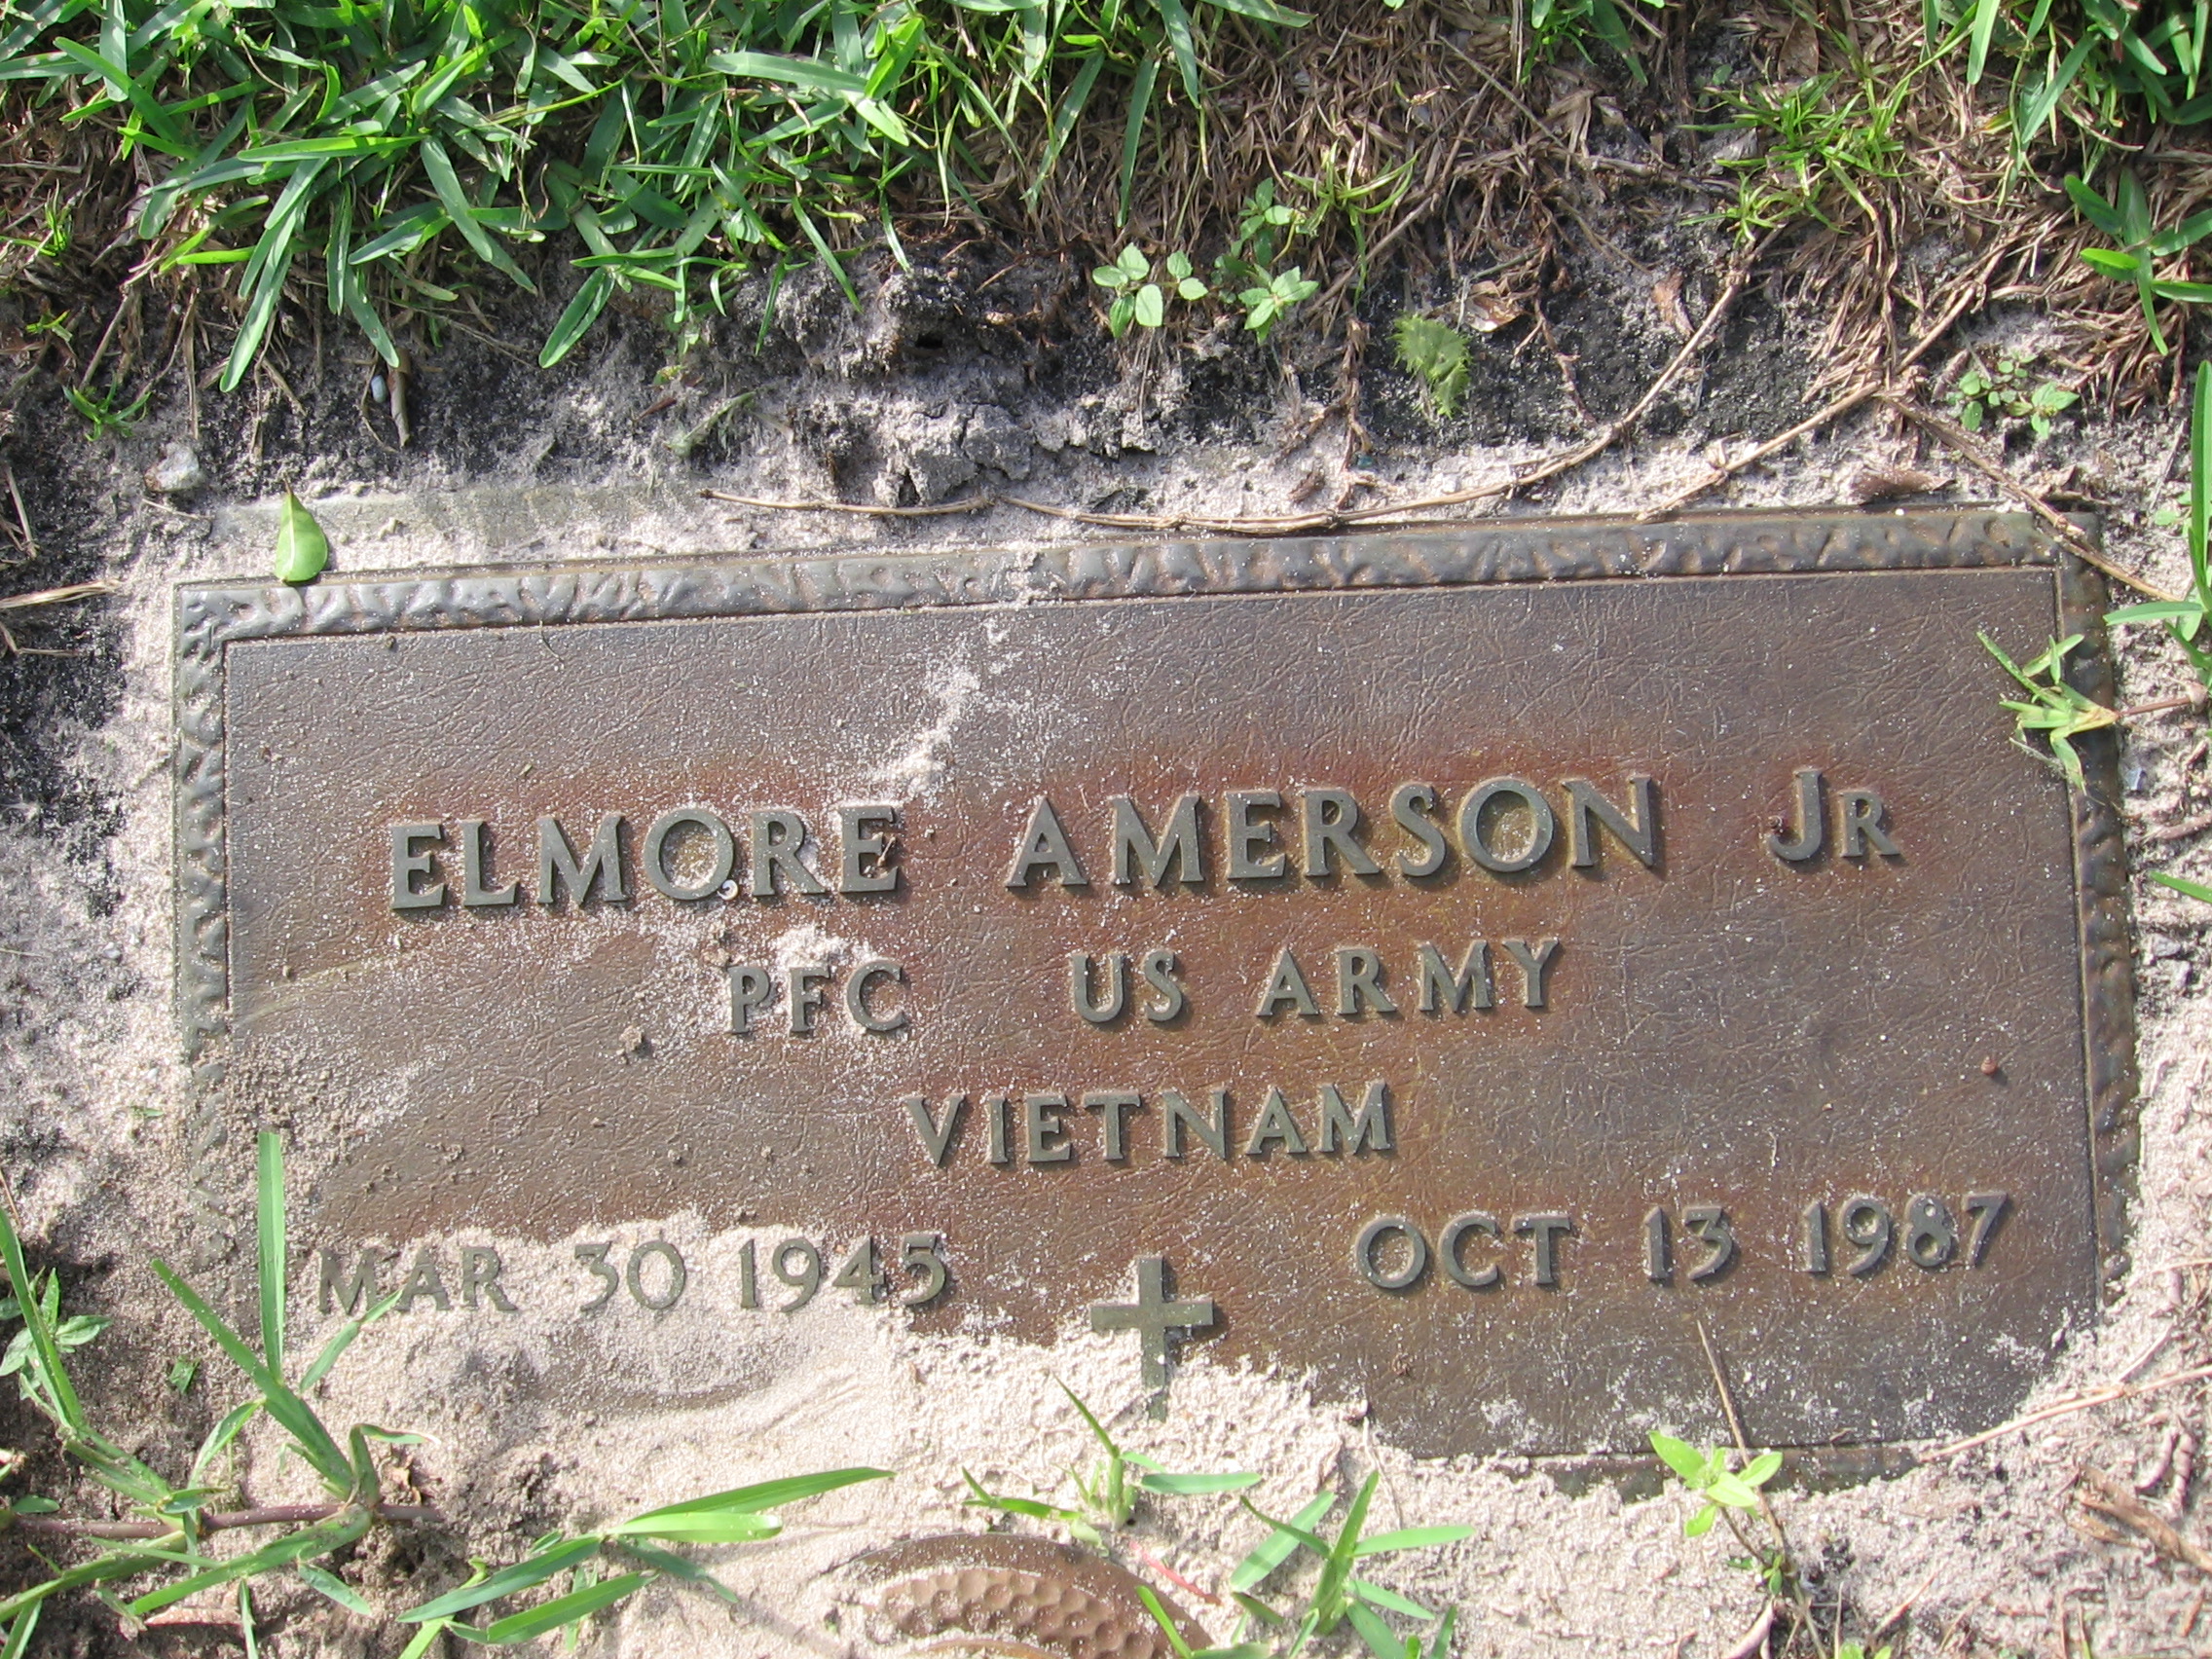 PFC Elmore Amerson, Jr